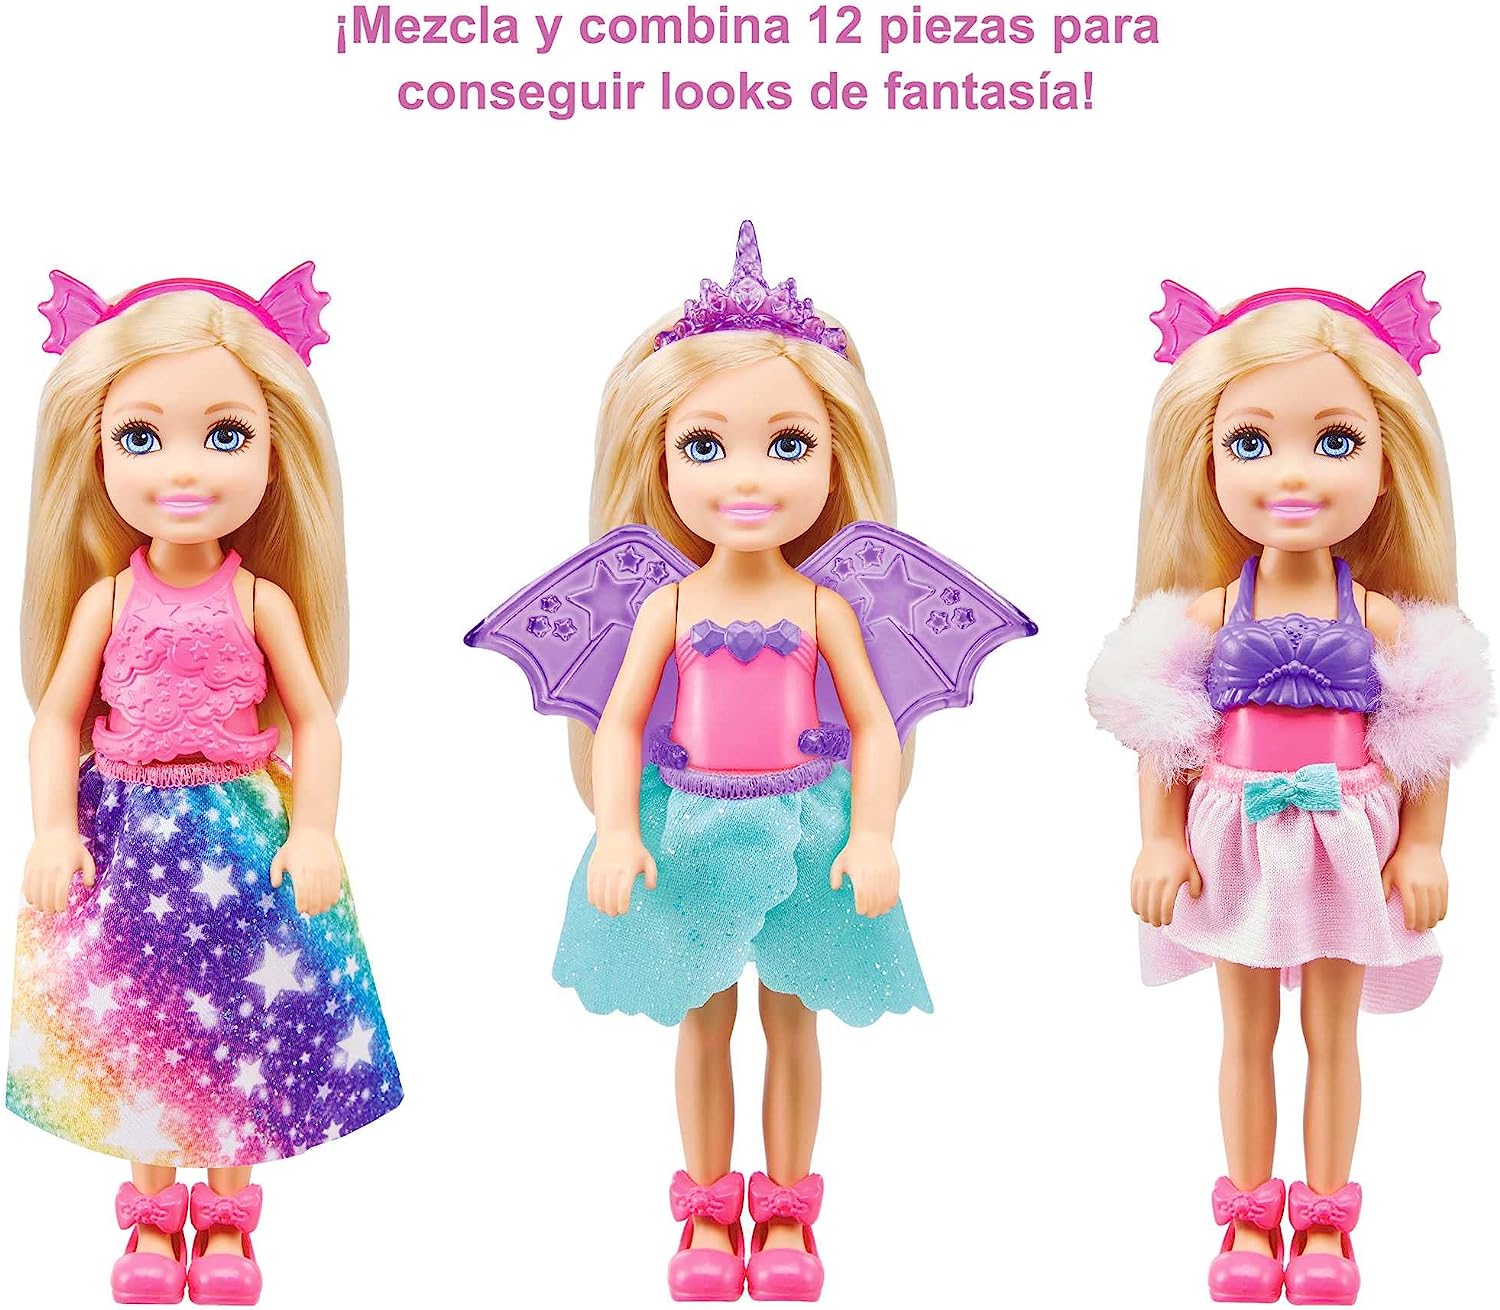 バービー バービー人形 Barbie Dreamtopia Chelsea Doll and Dress-Up Set with 12 Fashion Pieces Themed to Princess, Mermaid, Unicorn and Dragon, Gift for 3 to 7 Year Oldsバービー バービー人形 3